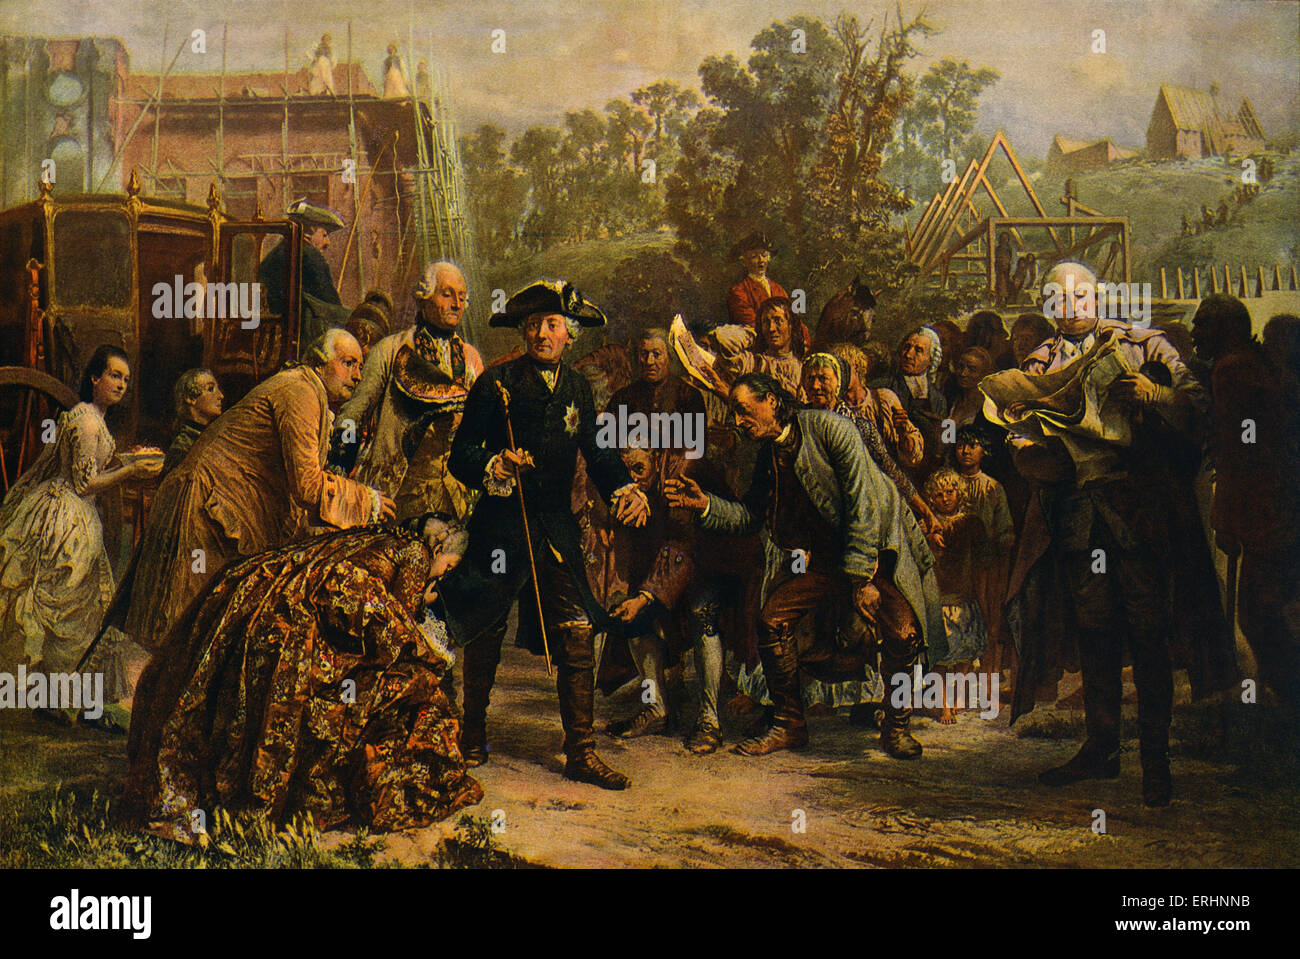 'Friedrich der Große auf Reisen' (Frederick the Great on his travels) - after a painting by Adolf von Menzel, c. 1850. Being Stock Photo